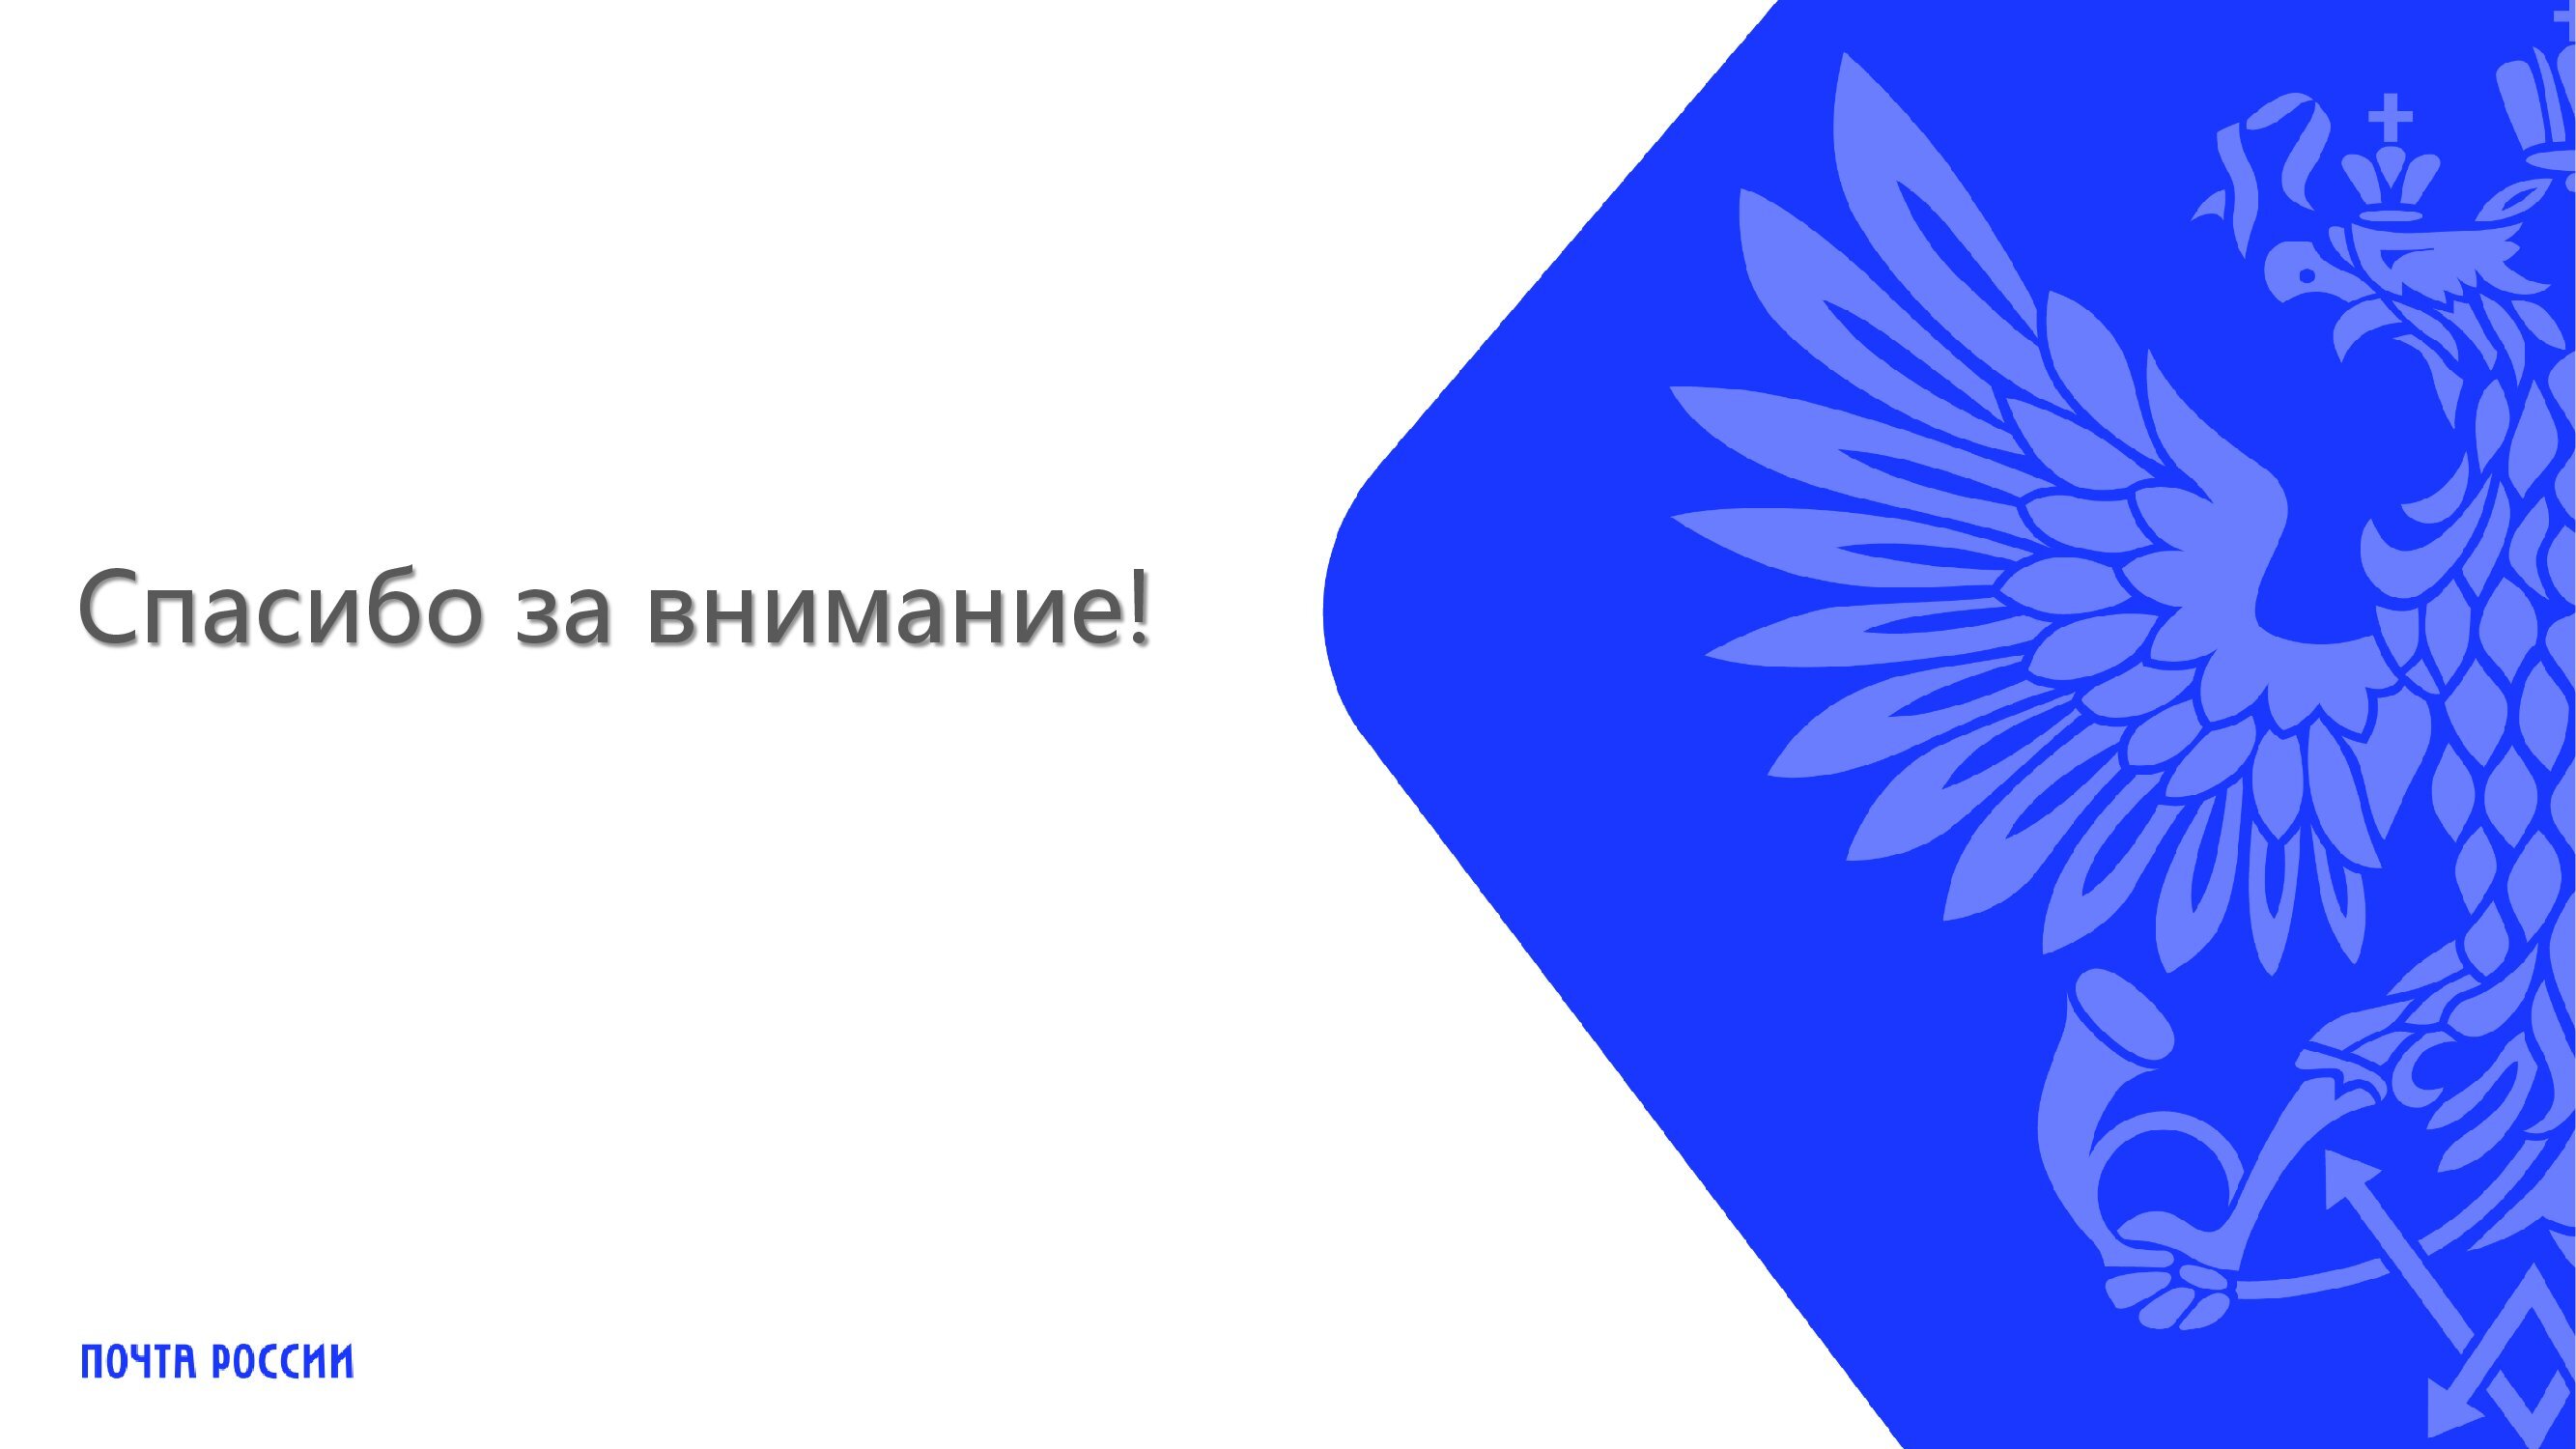 почта россии логотип картинки для детей